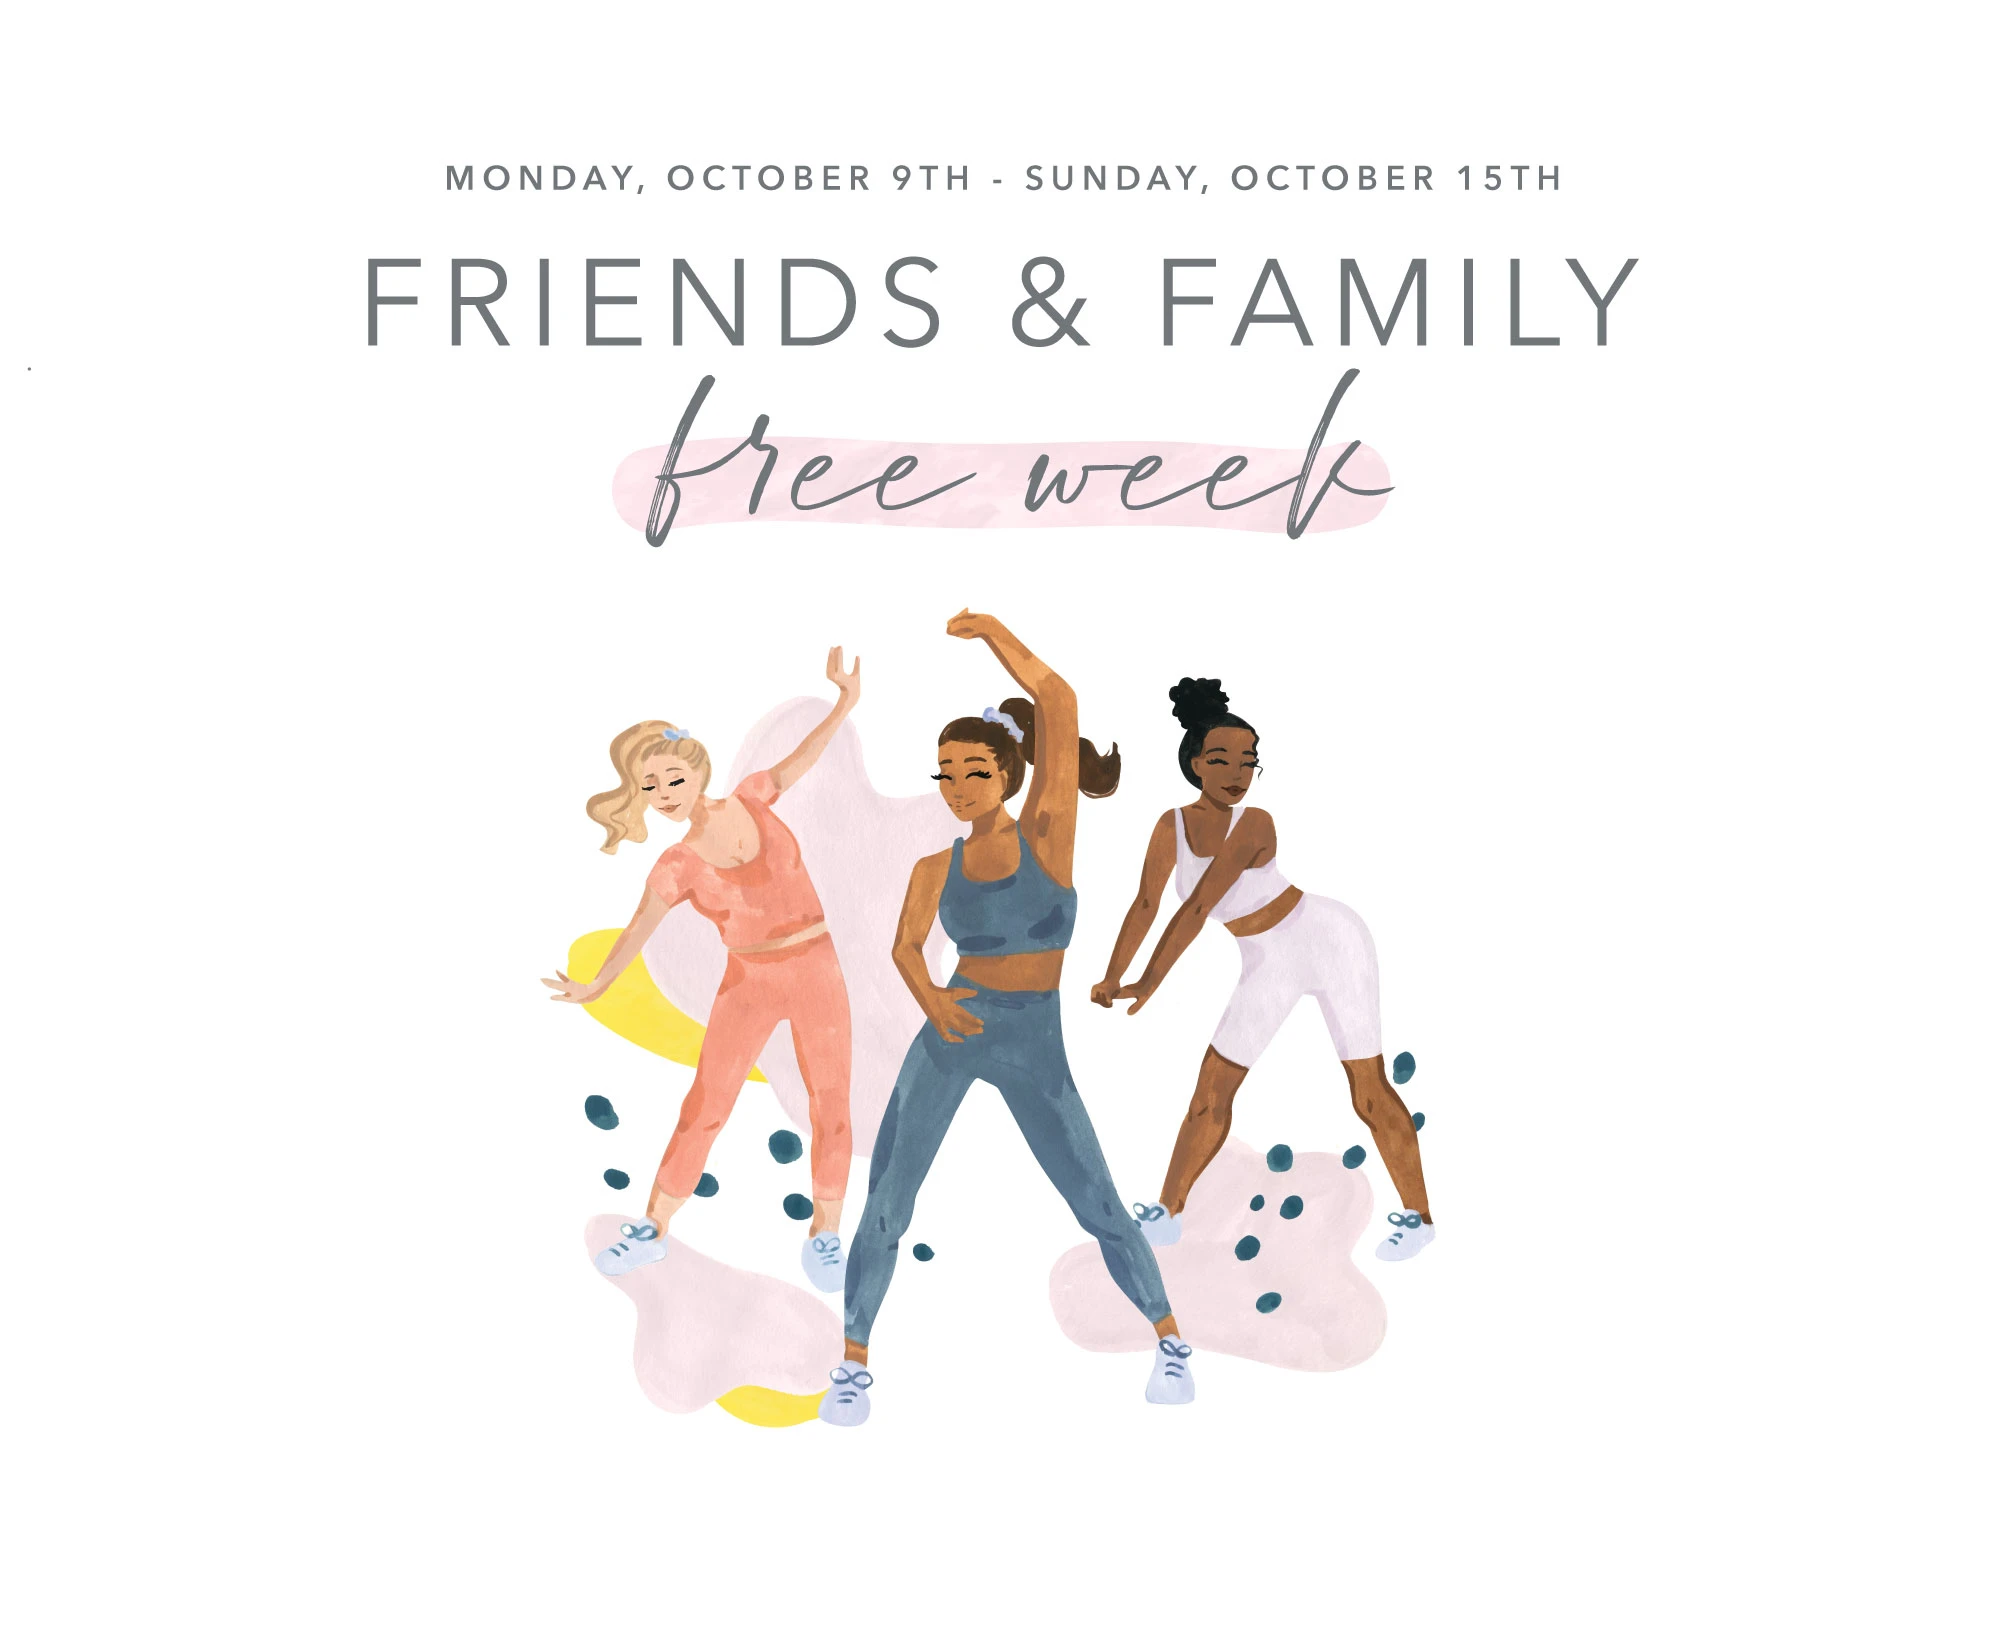 Friends & Family - Free Week